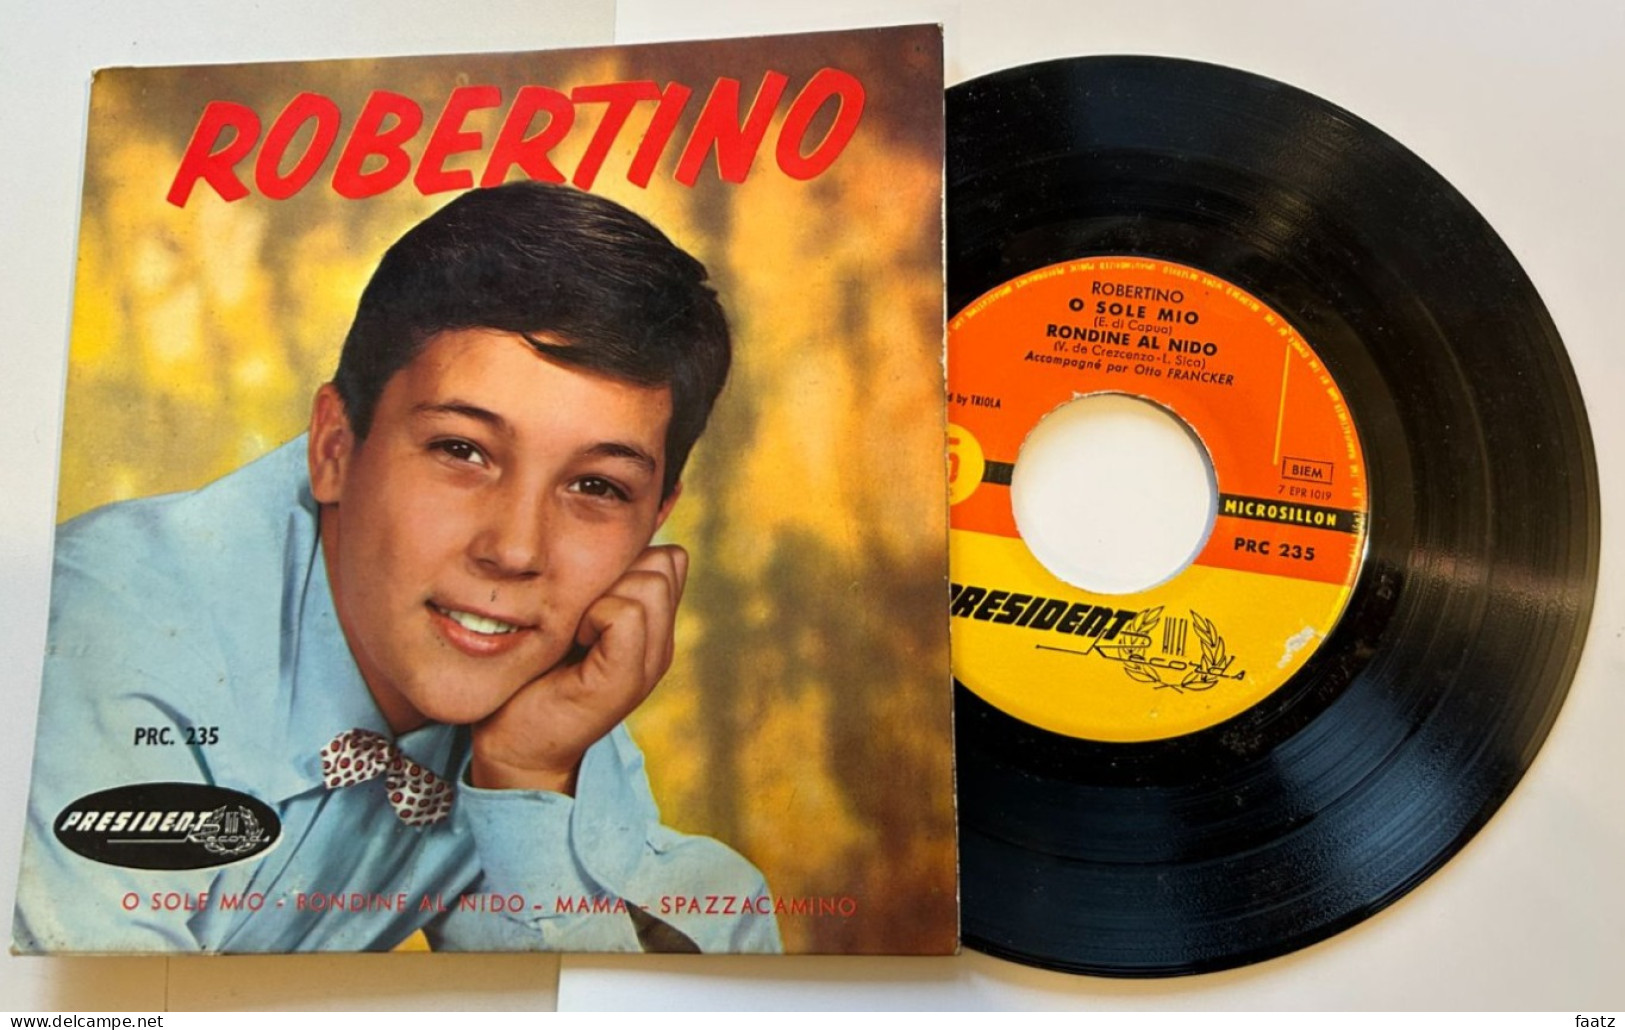 45T Vinyle - Robertino (O Sole Mio, Rondine Al Nido, Mama, Spazzacamino) - Opera